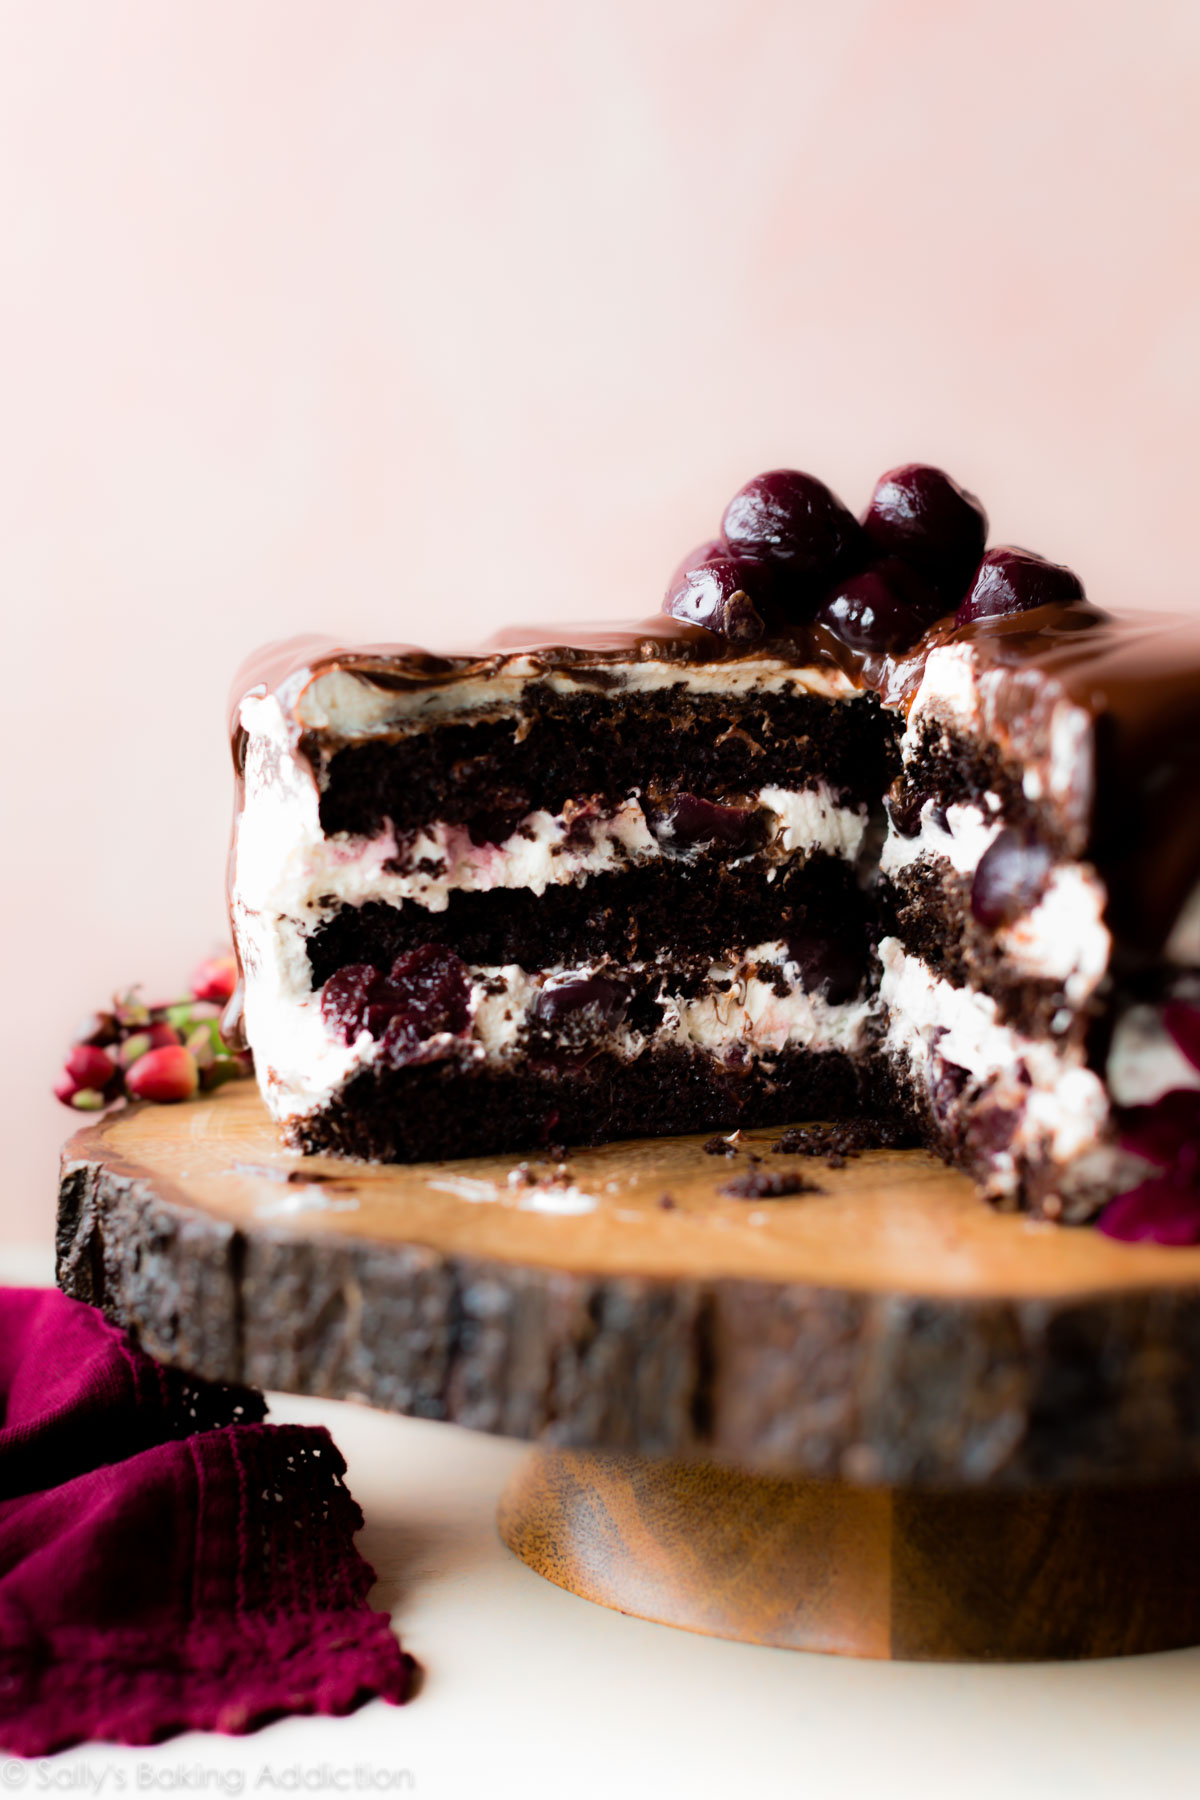 Le gâteau au chocolat super moelleux, la crème fouettée et les cerises douces noires sont des gâteaux de la Forêt-Noire! Gâteau au chocolat fait maison sur sallysbakingaddiction.com